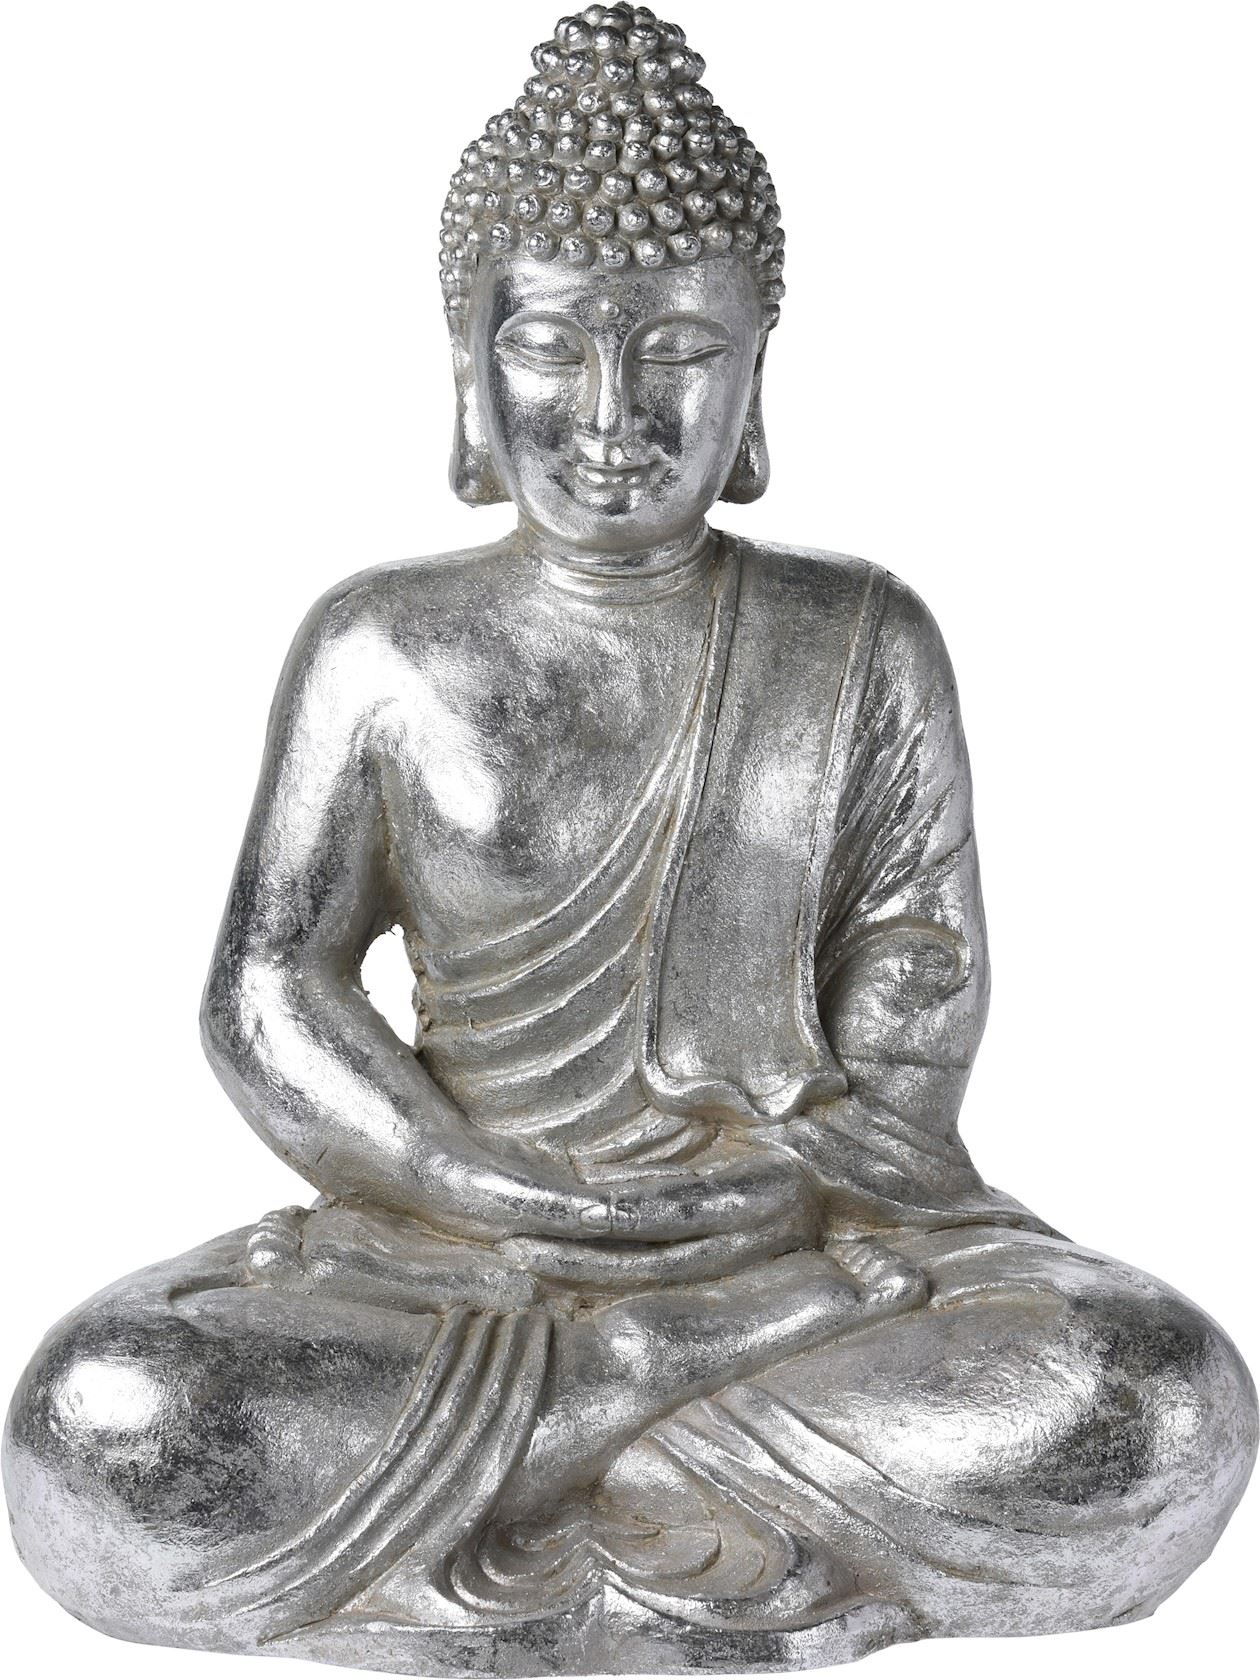 Boeddha zittend zilver 49cm - Hermie.com - Alles voor huis & tuin online!